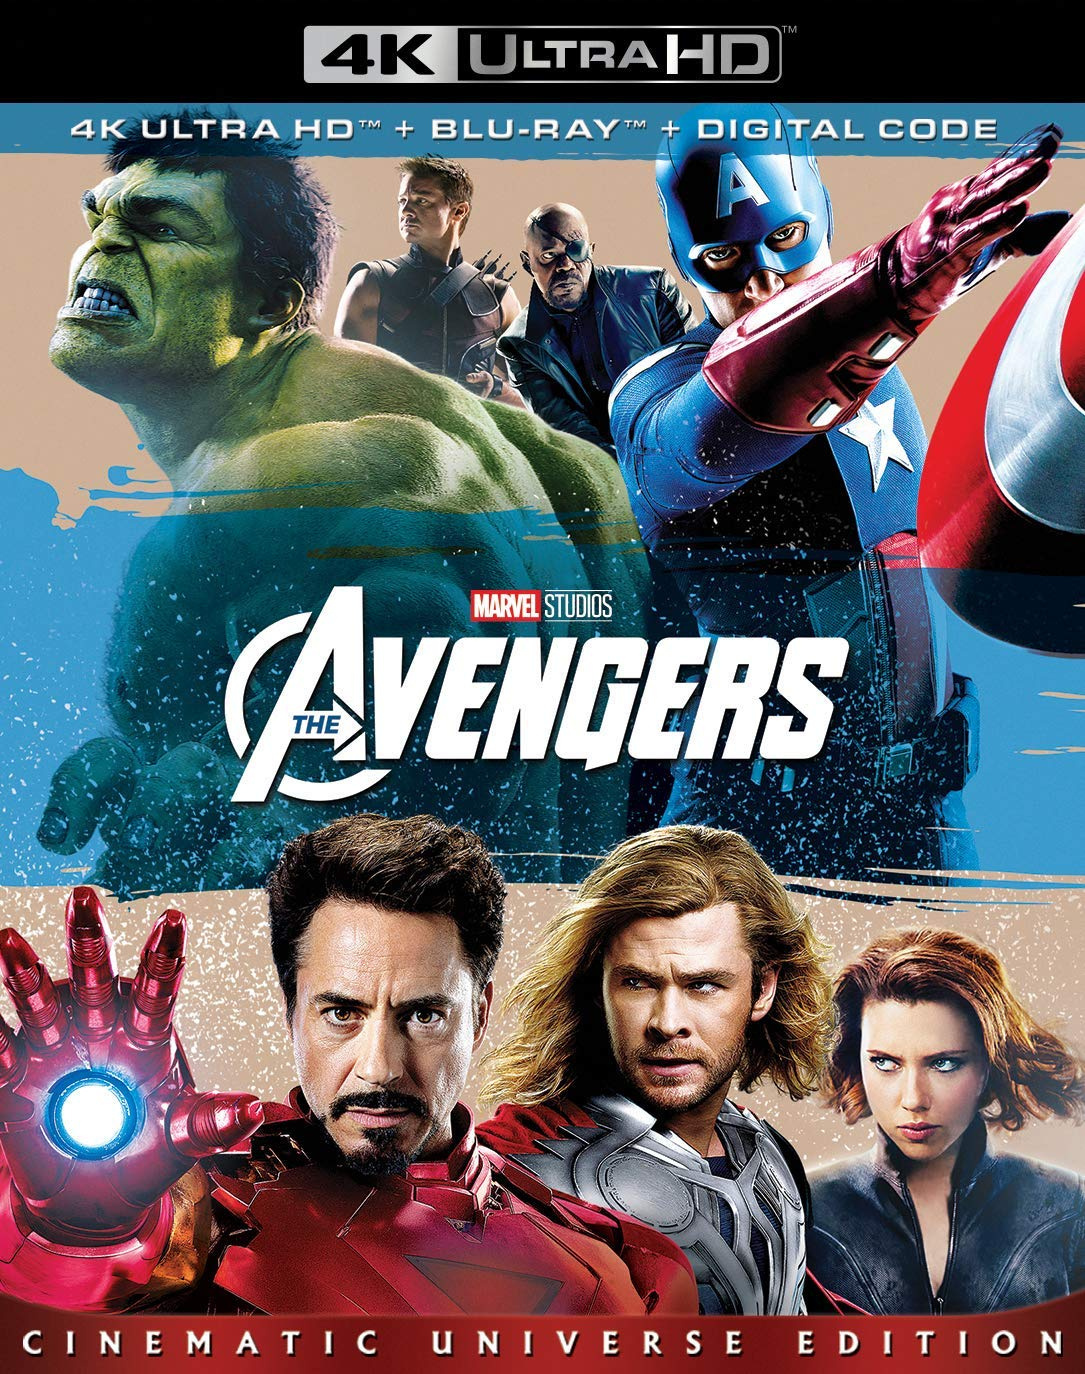 复仇者联盟 *修复版*【美版4K DIY大陆公映国配+简繁英双语字幕+BD正版国配+次世代7.1国配】 The Avengers 2012 UHD Blu-ray 2160p HEVC TrueHD Atmos 7.1 @OurBits  [60.81 GB  ]-1.jpg